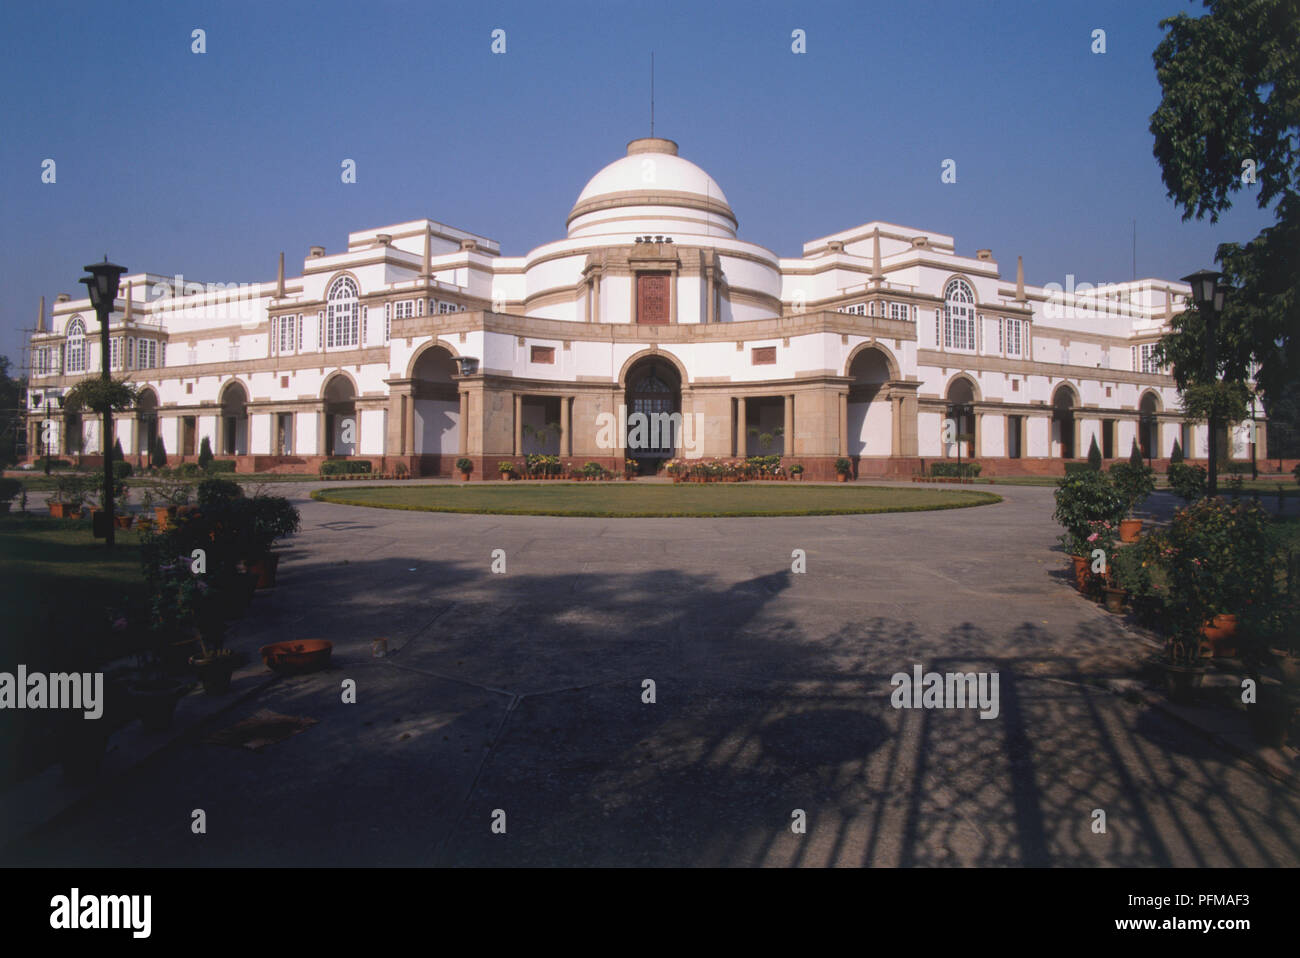 Indien, Neu-Delhi, neoklassizistischen Fassade von Hyderabad House, Architektur während des britischen Raj eingeführt. Stockfoto